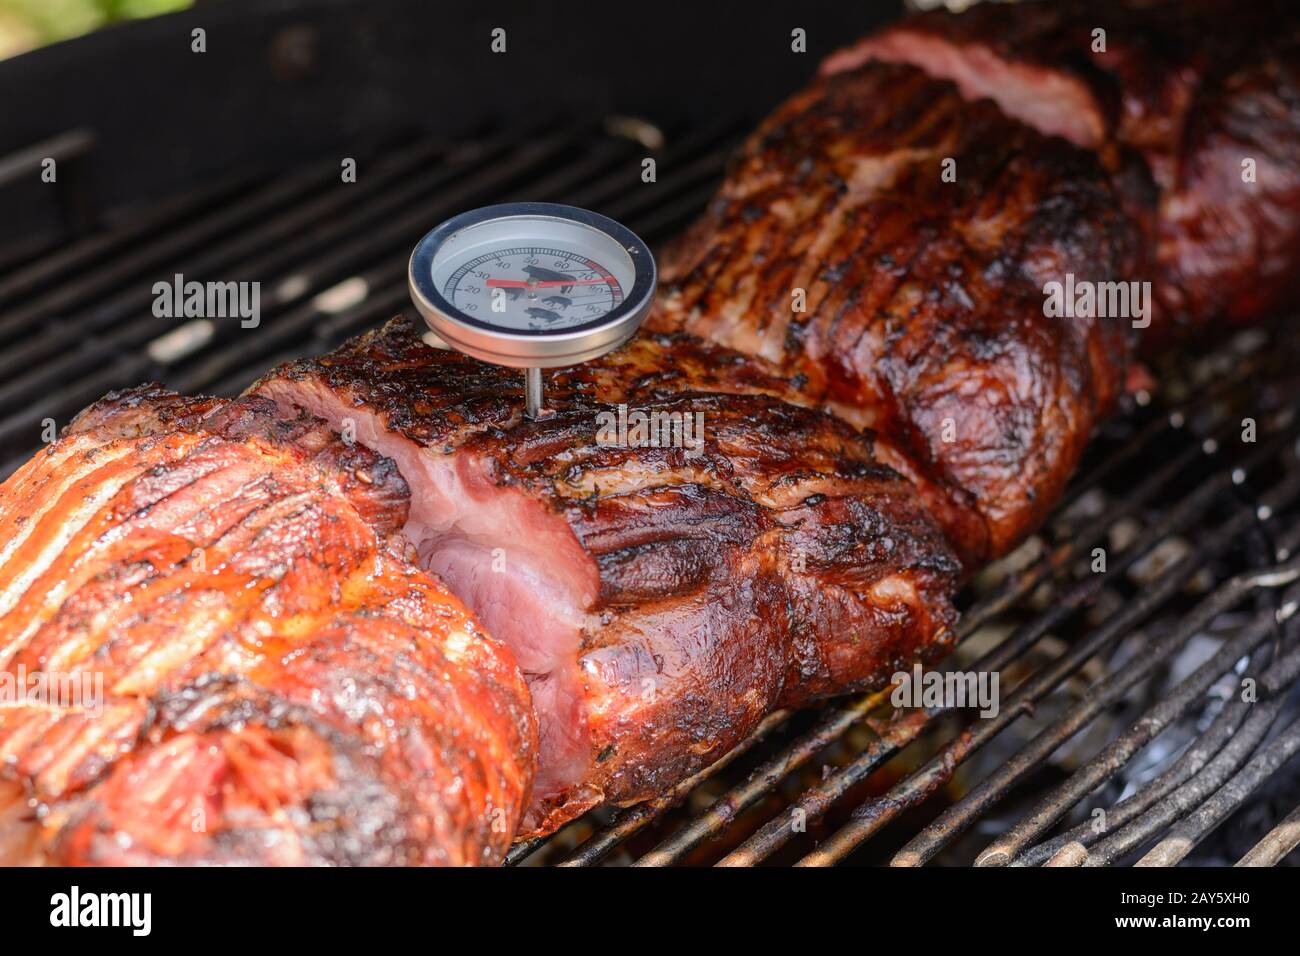 Avec thermomètre, la température de la viande est vérifiée sur le gril à boule Banque D'Images